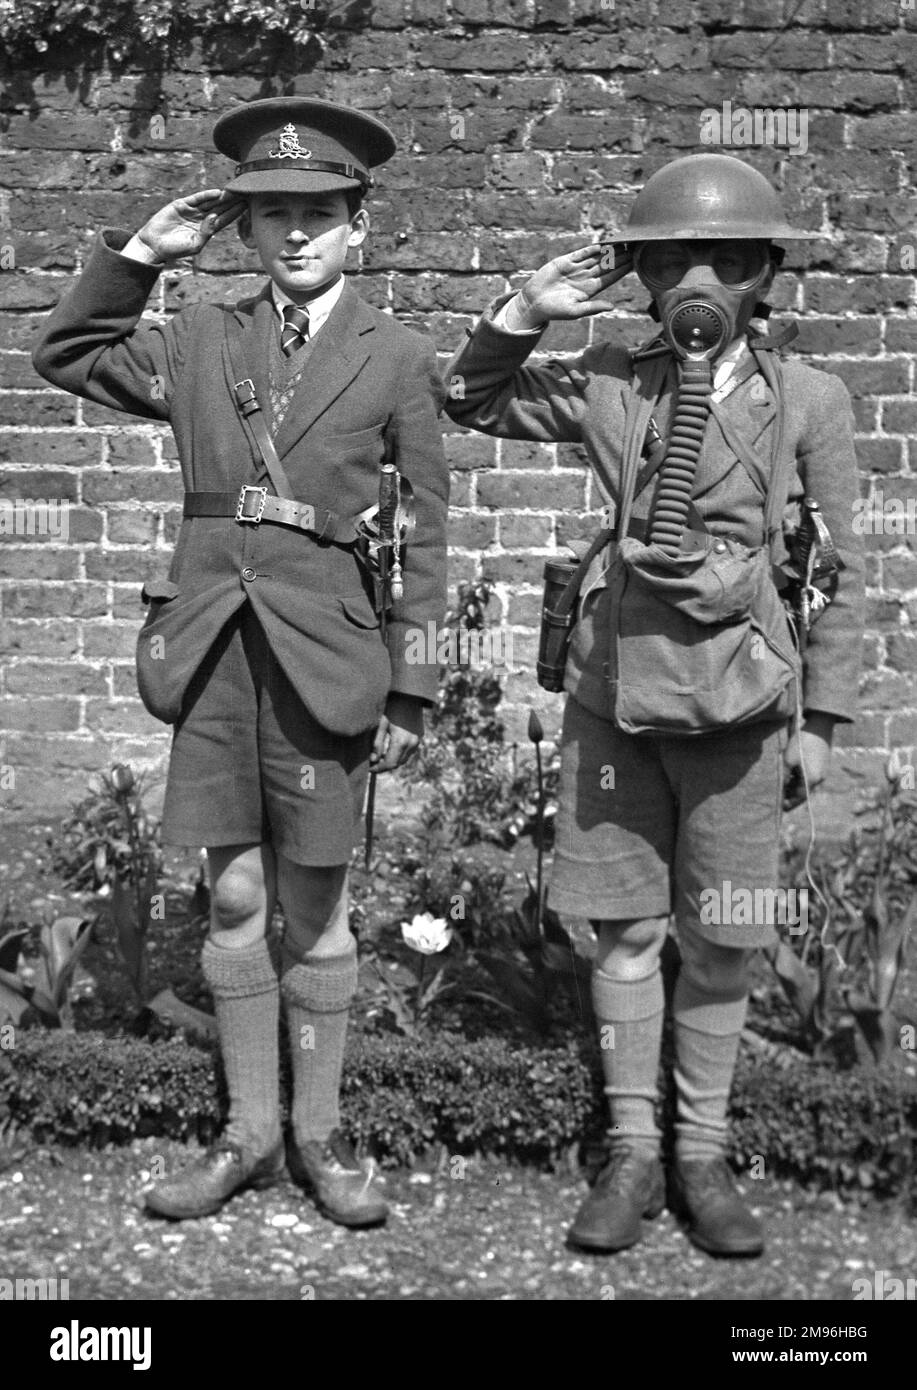 Deux garçons saluant, probablement pendant la Seconde Guerre mondiale. Celui de droite porte un casque en étain et un masque à gaz. Celui de gauche porte une casquette à sommet de l'Artillerie royale et une épée cérémonielle. Banque D'Images